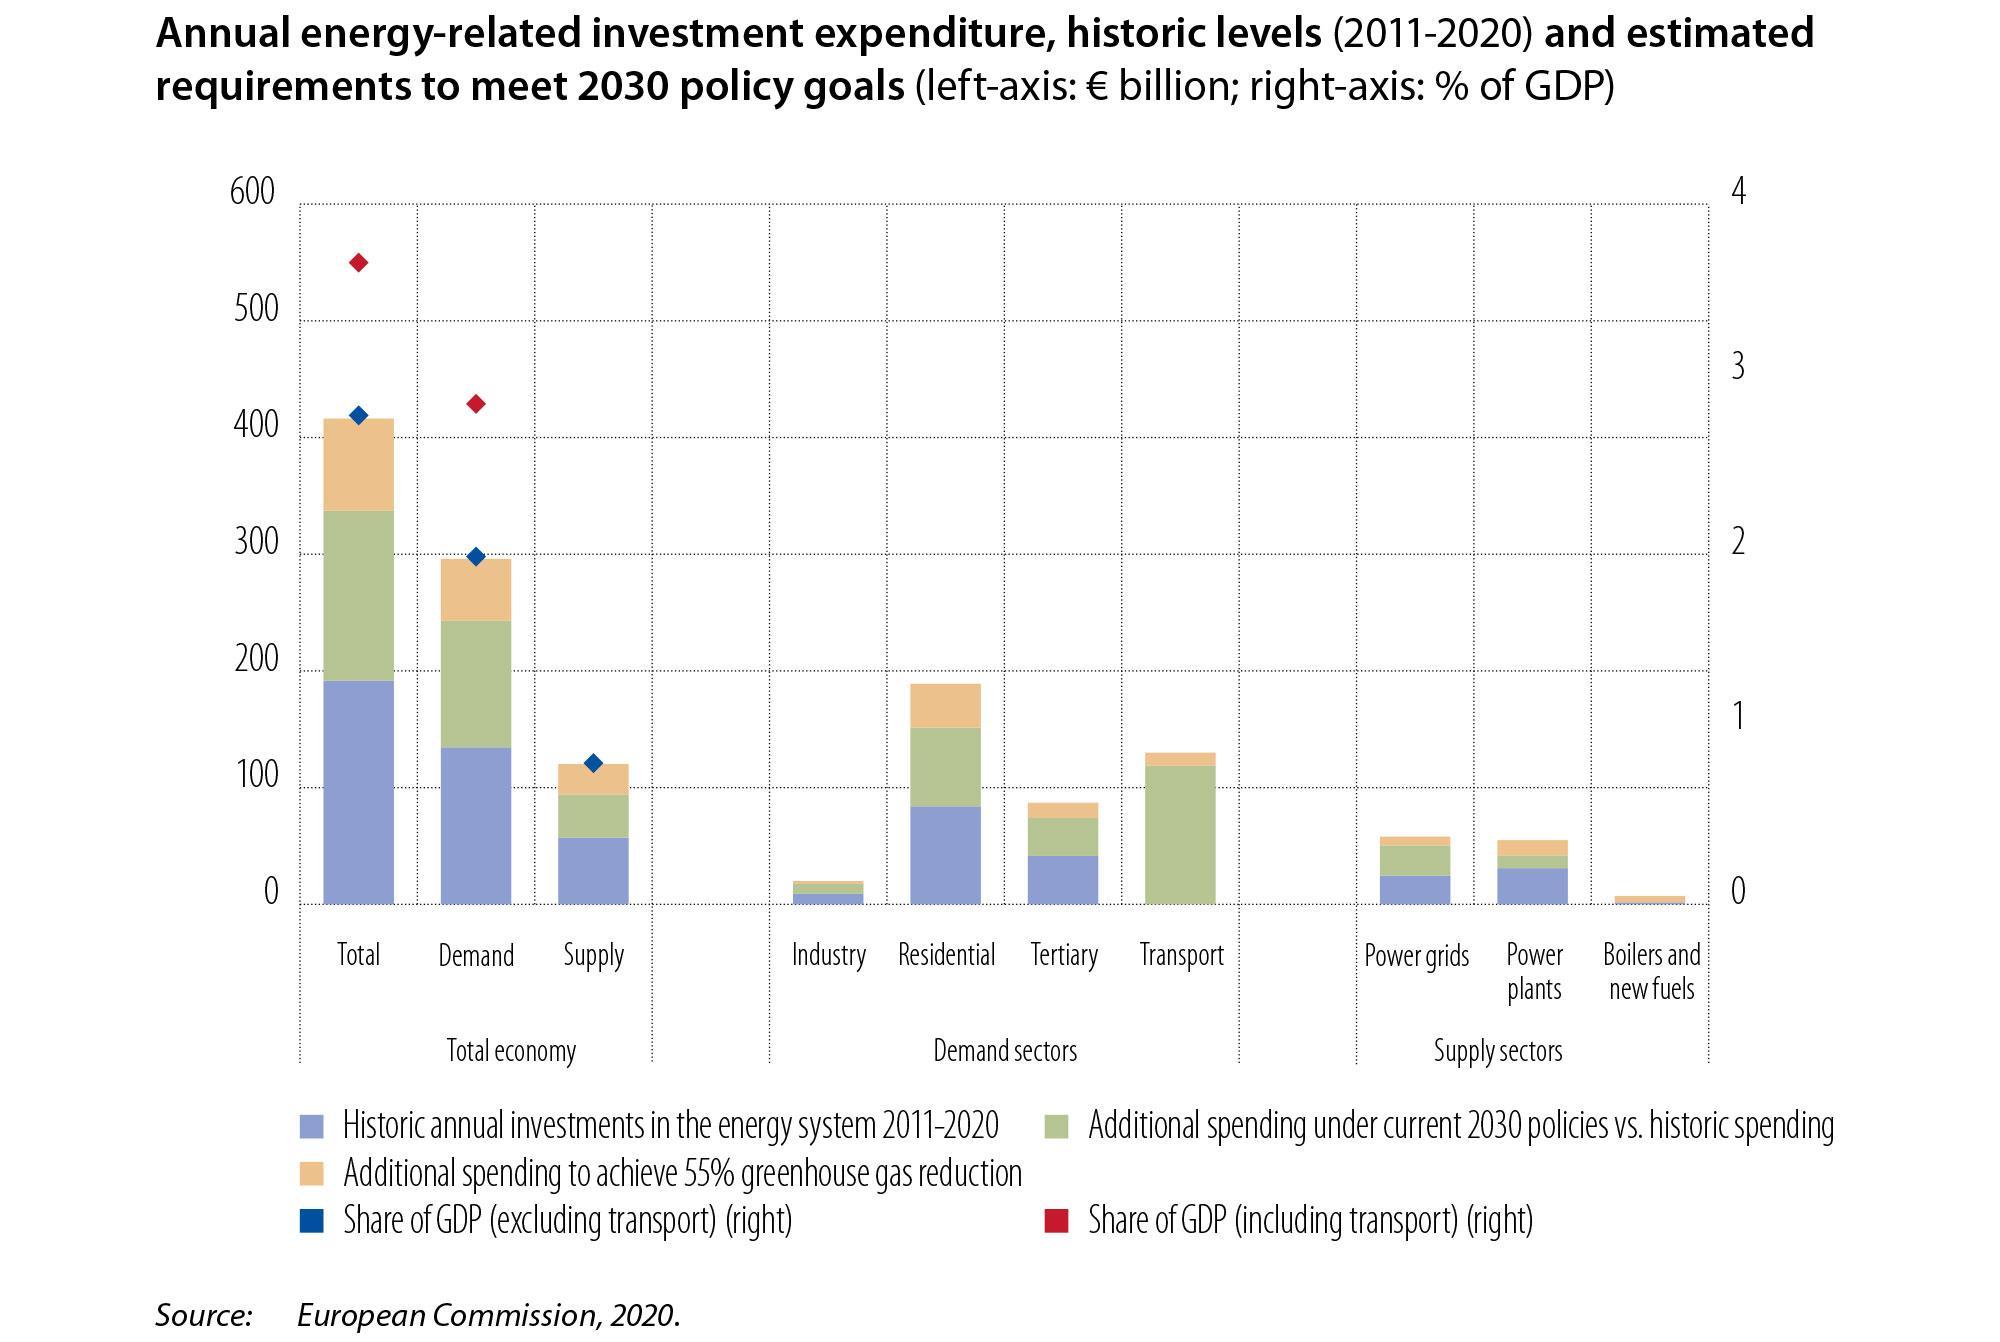 Dépenses d’investissement annuelles liées à l’énergie sur la période 2011-2020 et besoins estimés pour atteindre les objectifs stratégiques à l’horizon 2030 (échelle de gauche : Mrd EUR ; échelle de droite : % du PIB)